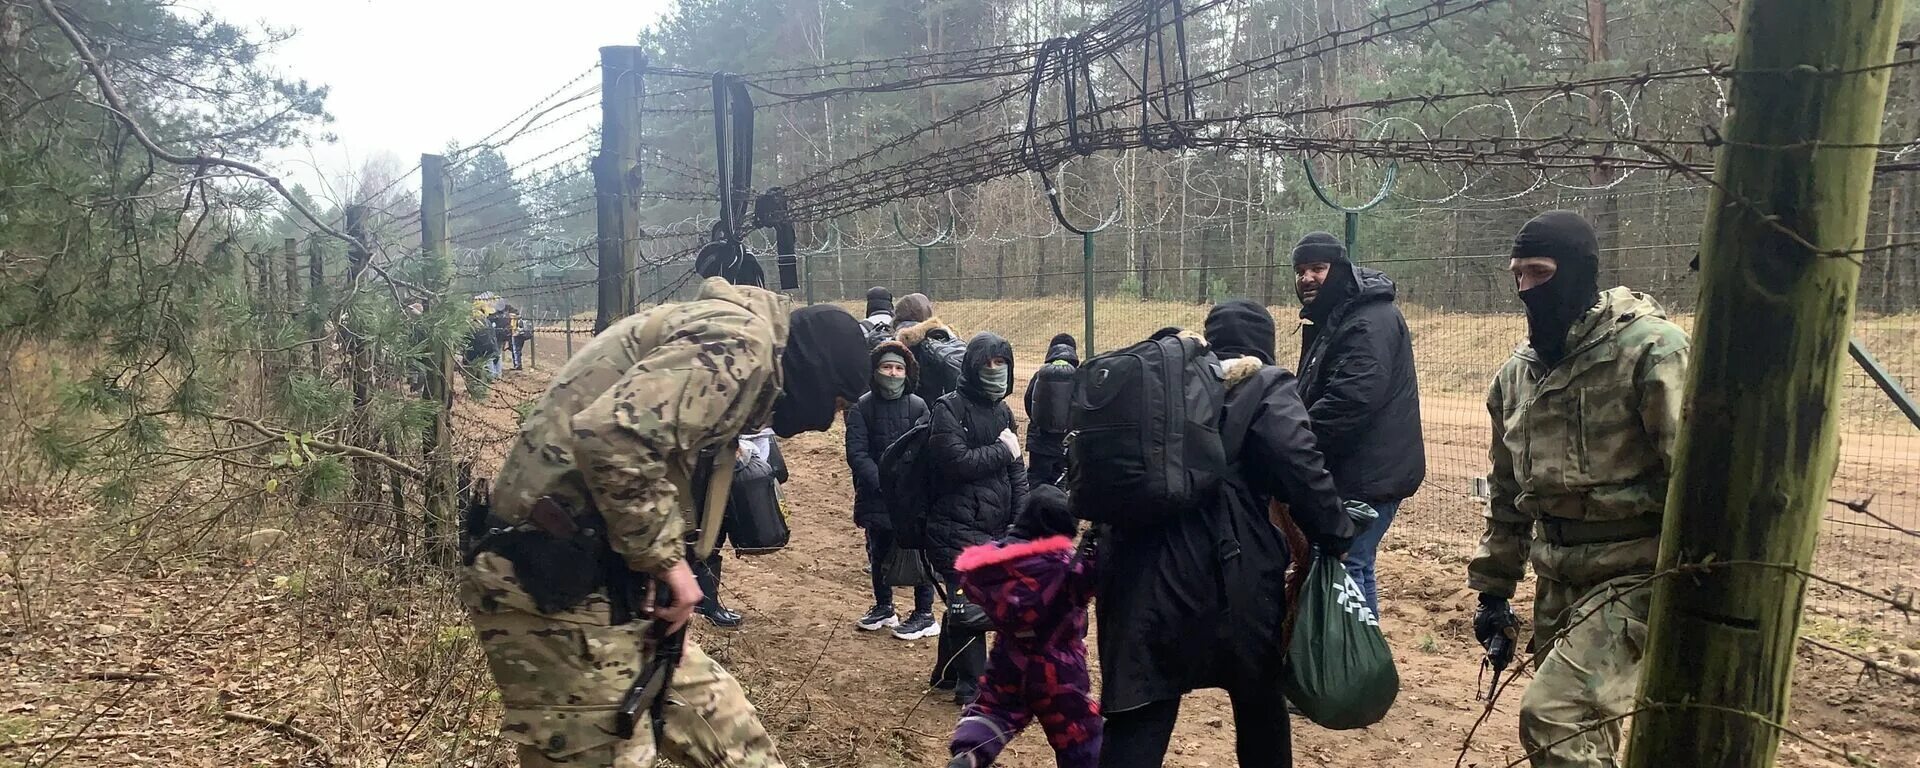 Европа нападение. Мигранты в Польшу кто они.